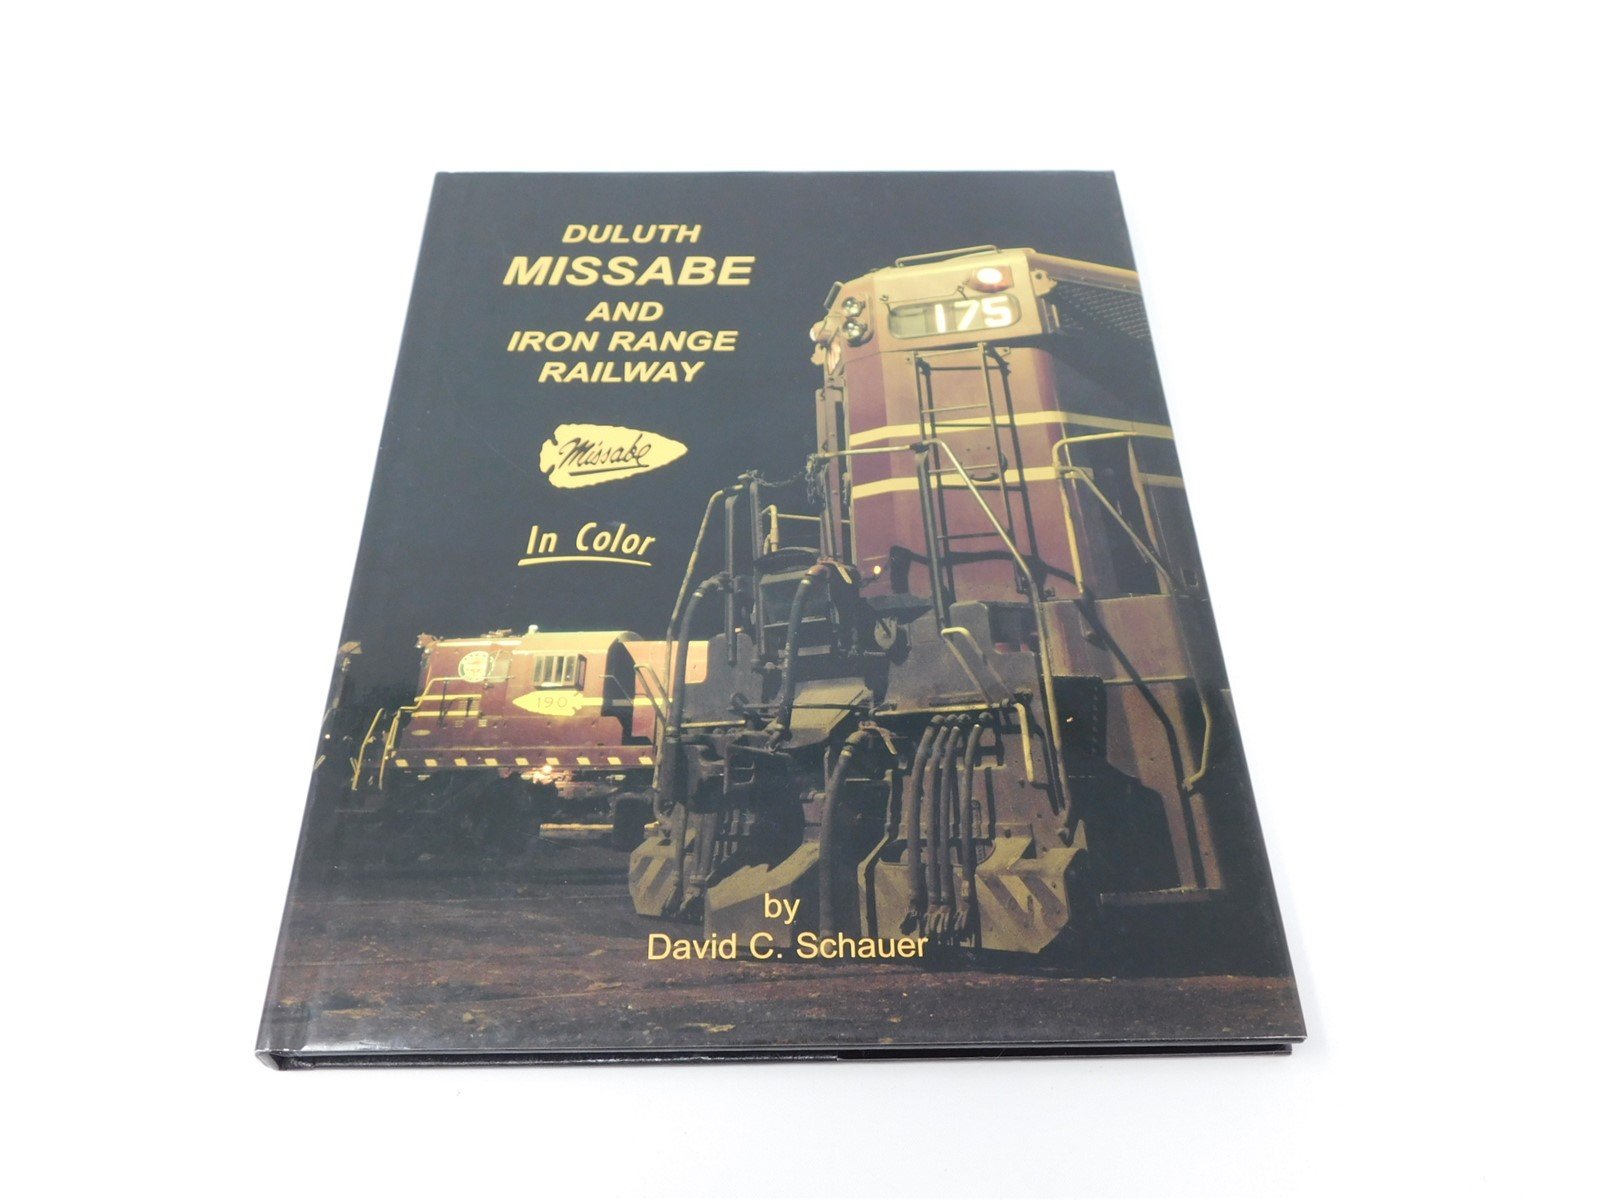 Morning Sun Books Duluth Missabe & Iron Range Railway by David C Schauer ©2002